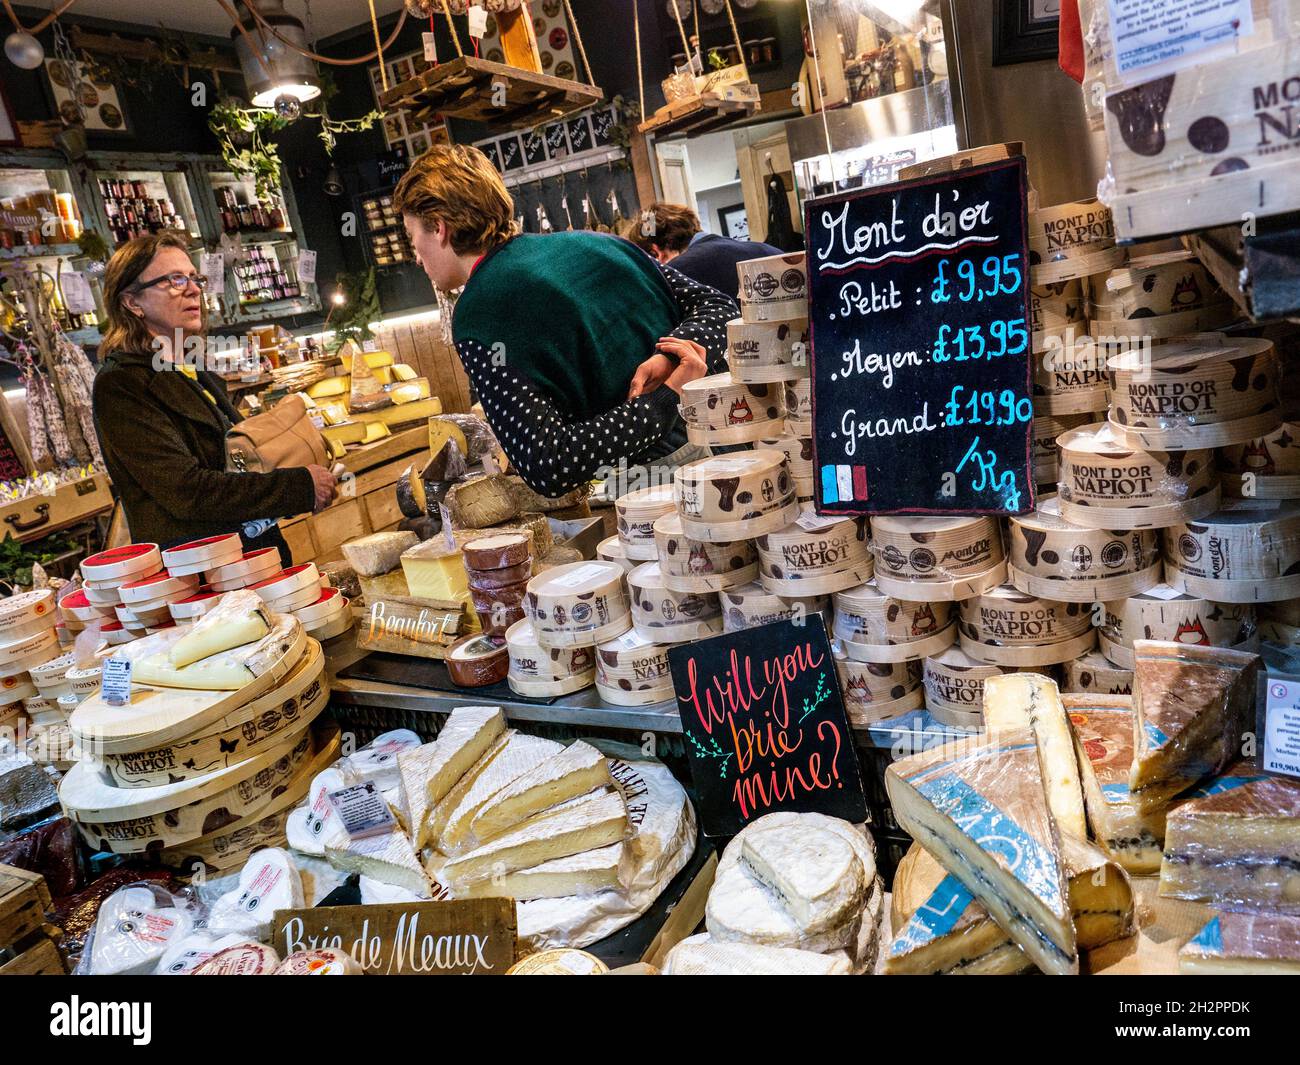 Mercato francese del formaggio mostra mercato Borough con un'ampia selezione di formaggi regionali francesi, tra cui le varietà di formaggio Mont d'Or e Brie nel mercato Borough Southwark London UK Foto Stock